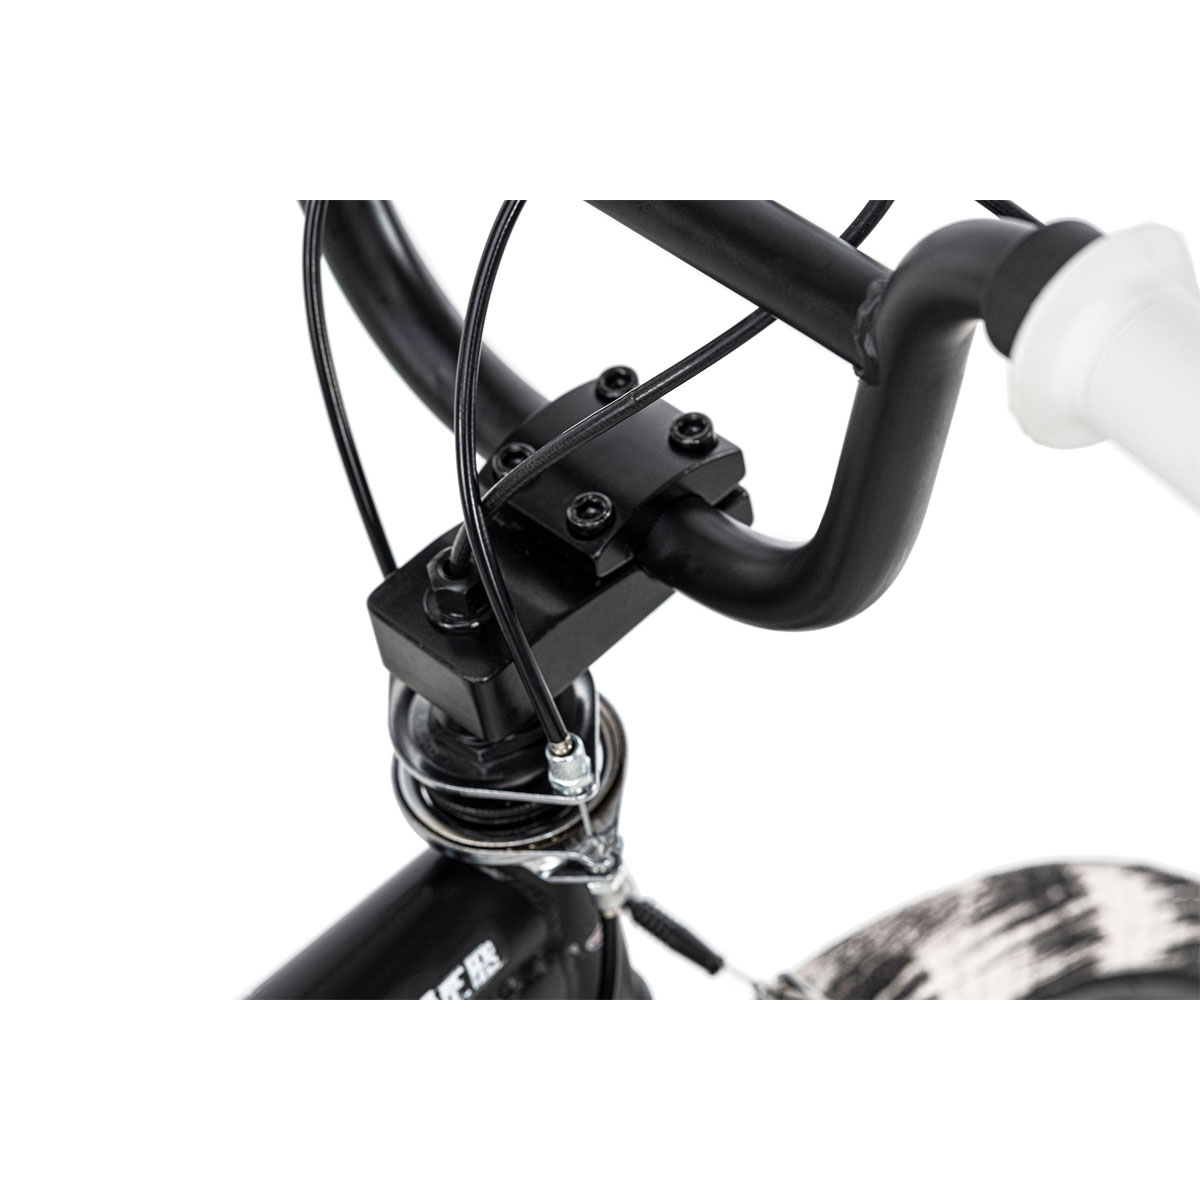 BMX-Rad „Crusher“, schwarz-weiß